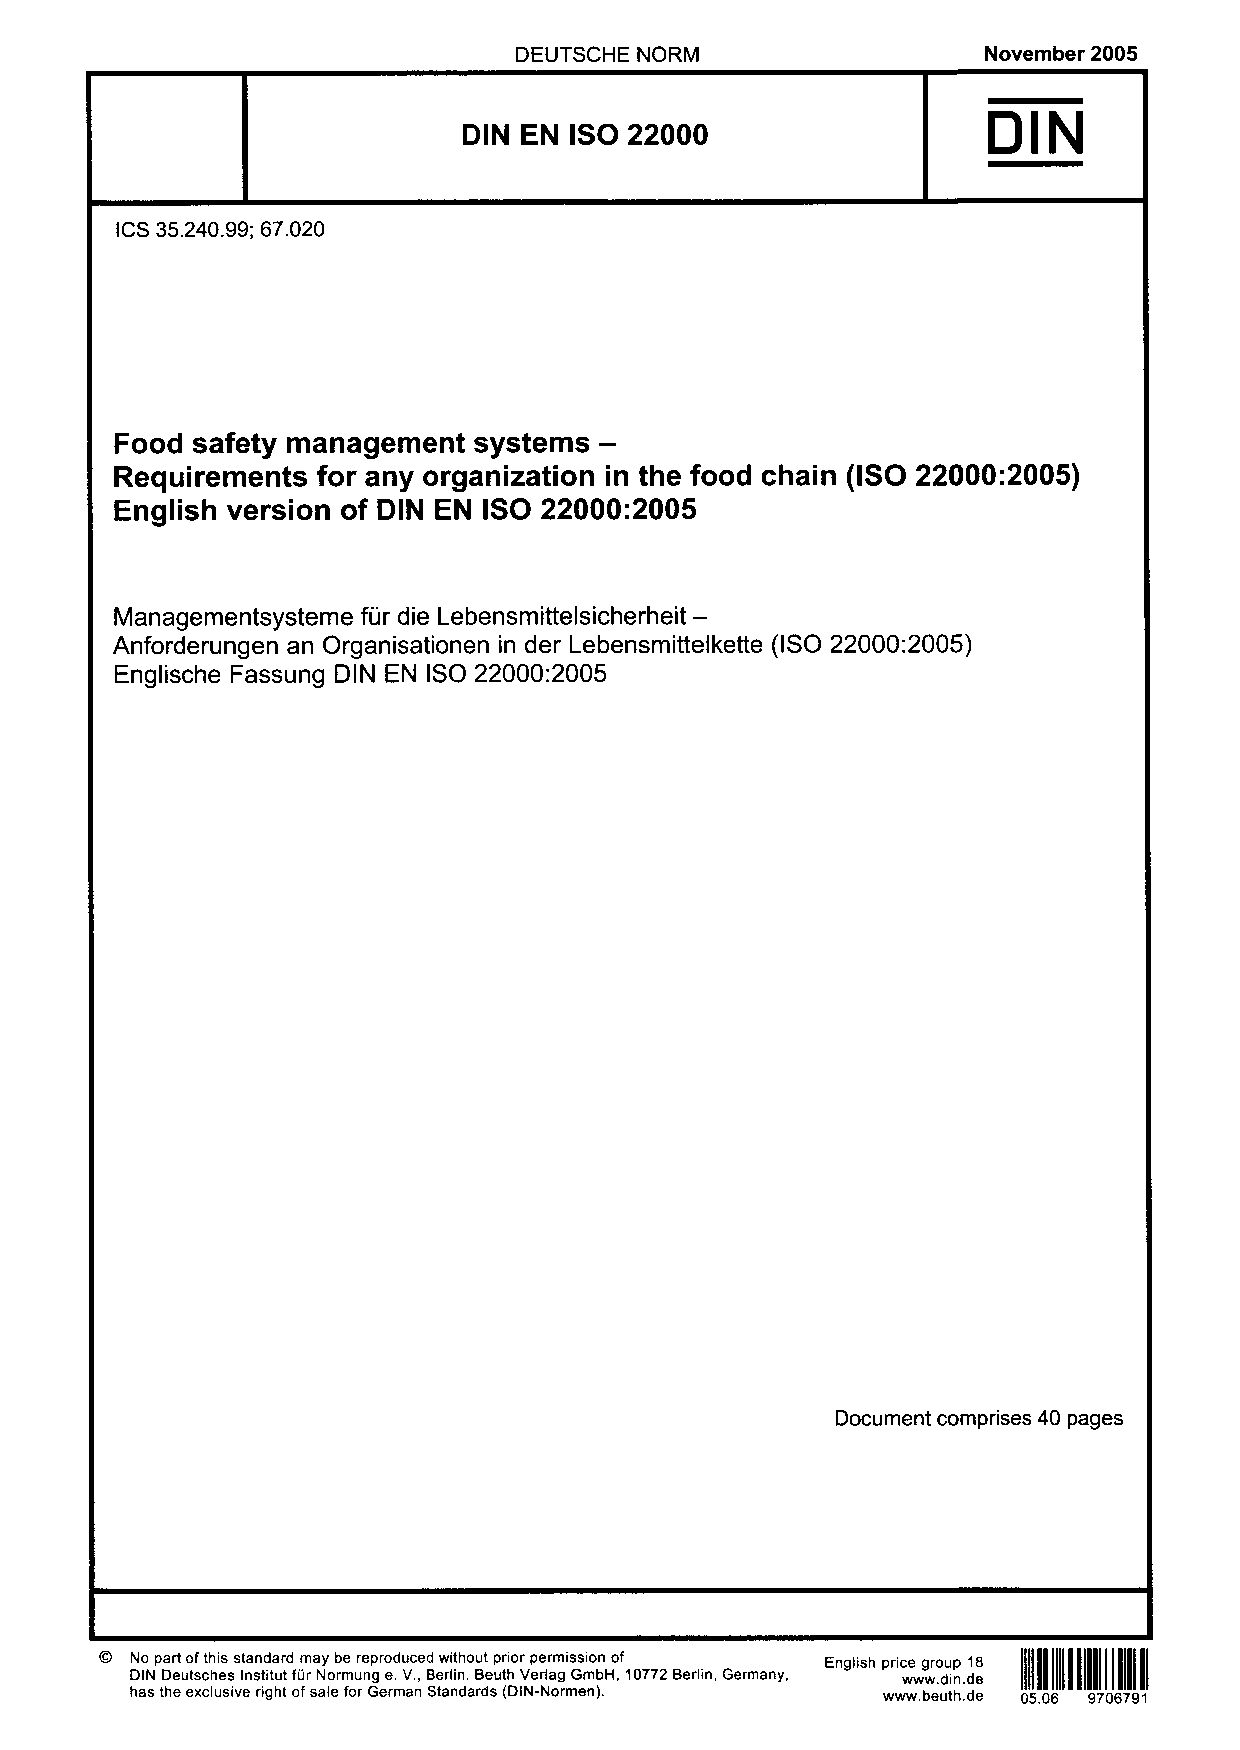 DIN EN ISO 22000:2005封面图